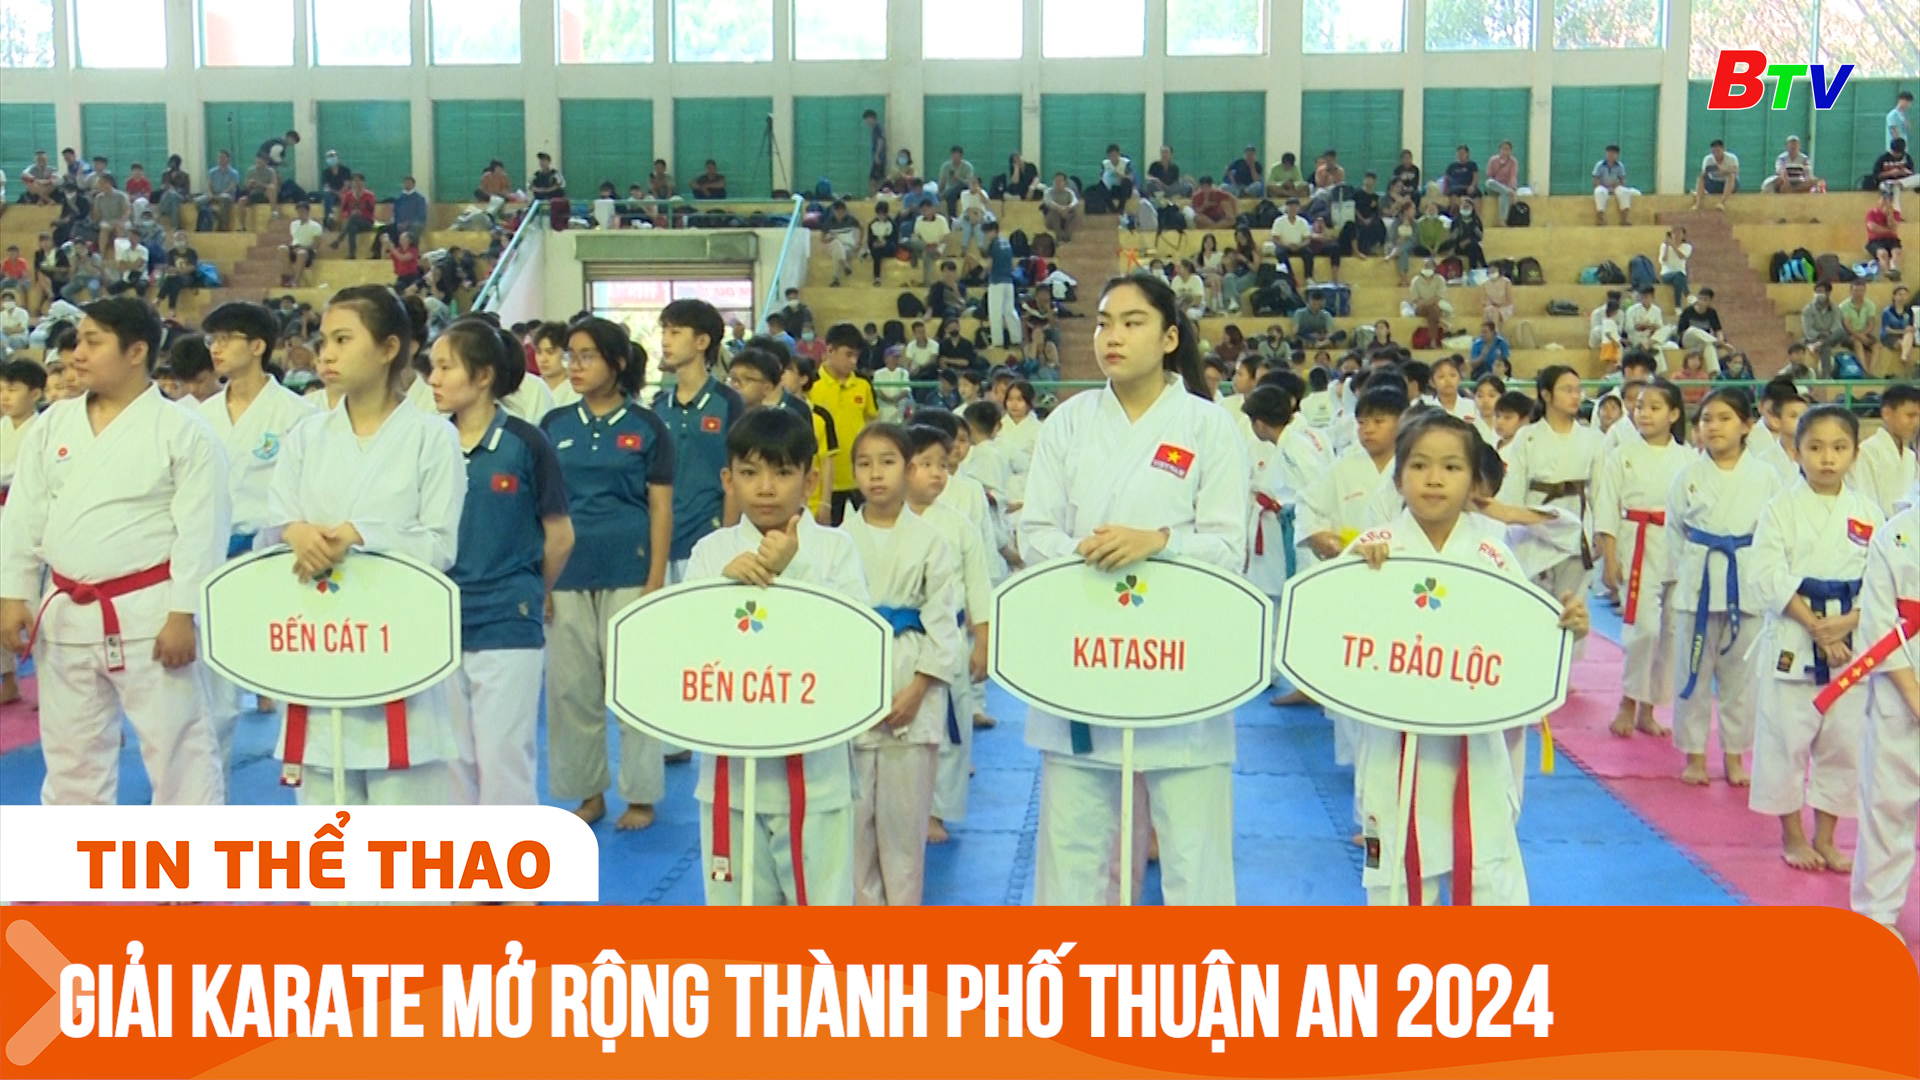 Giải vô địch Karate mở rộng thành phố Thuận An 2024 | Tin Thể thao 24h	